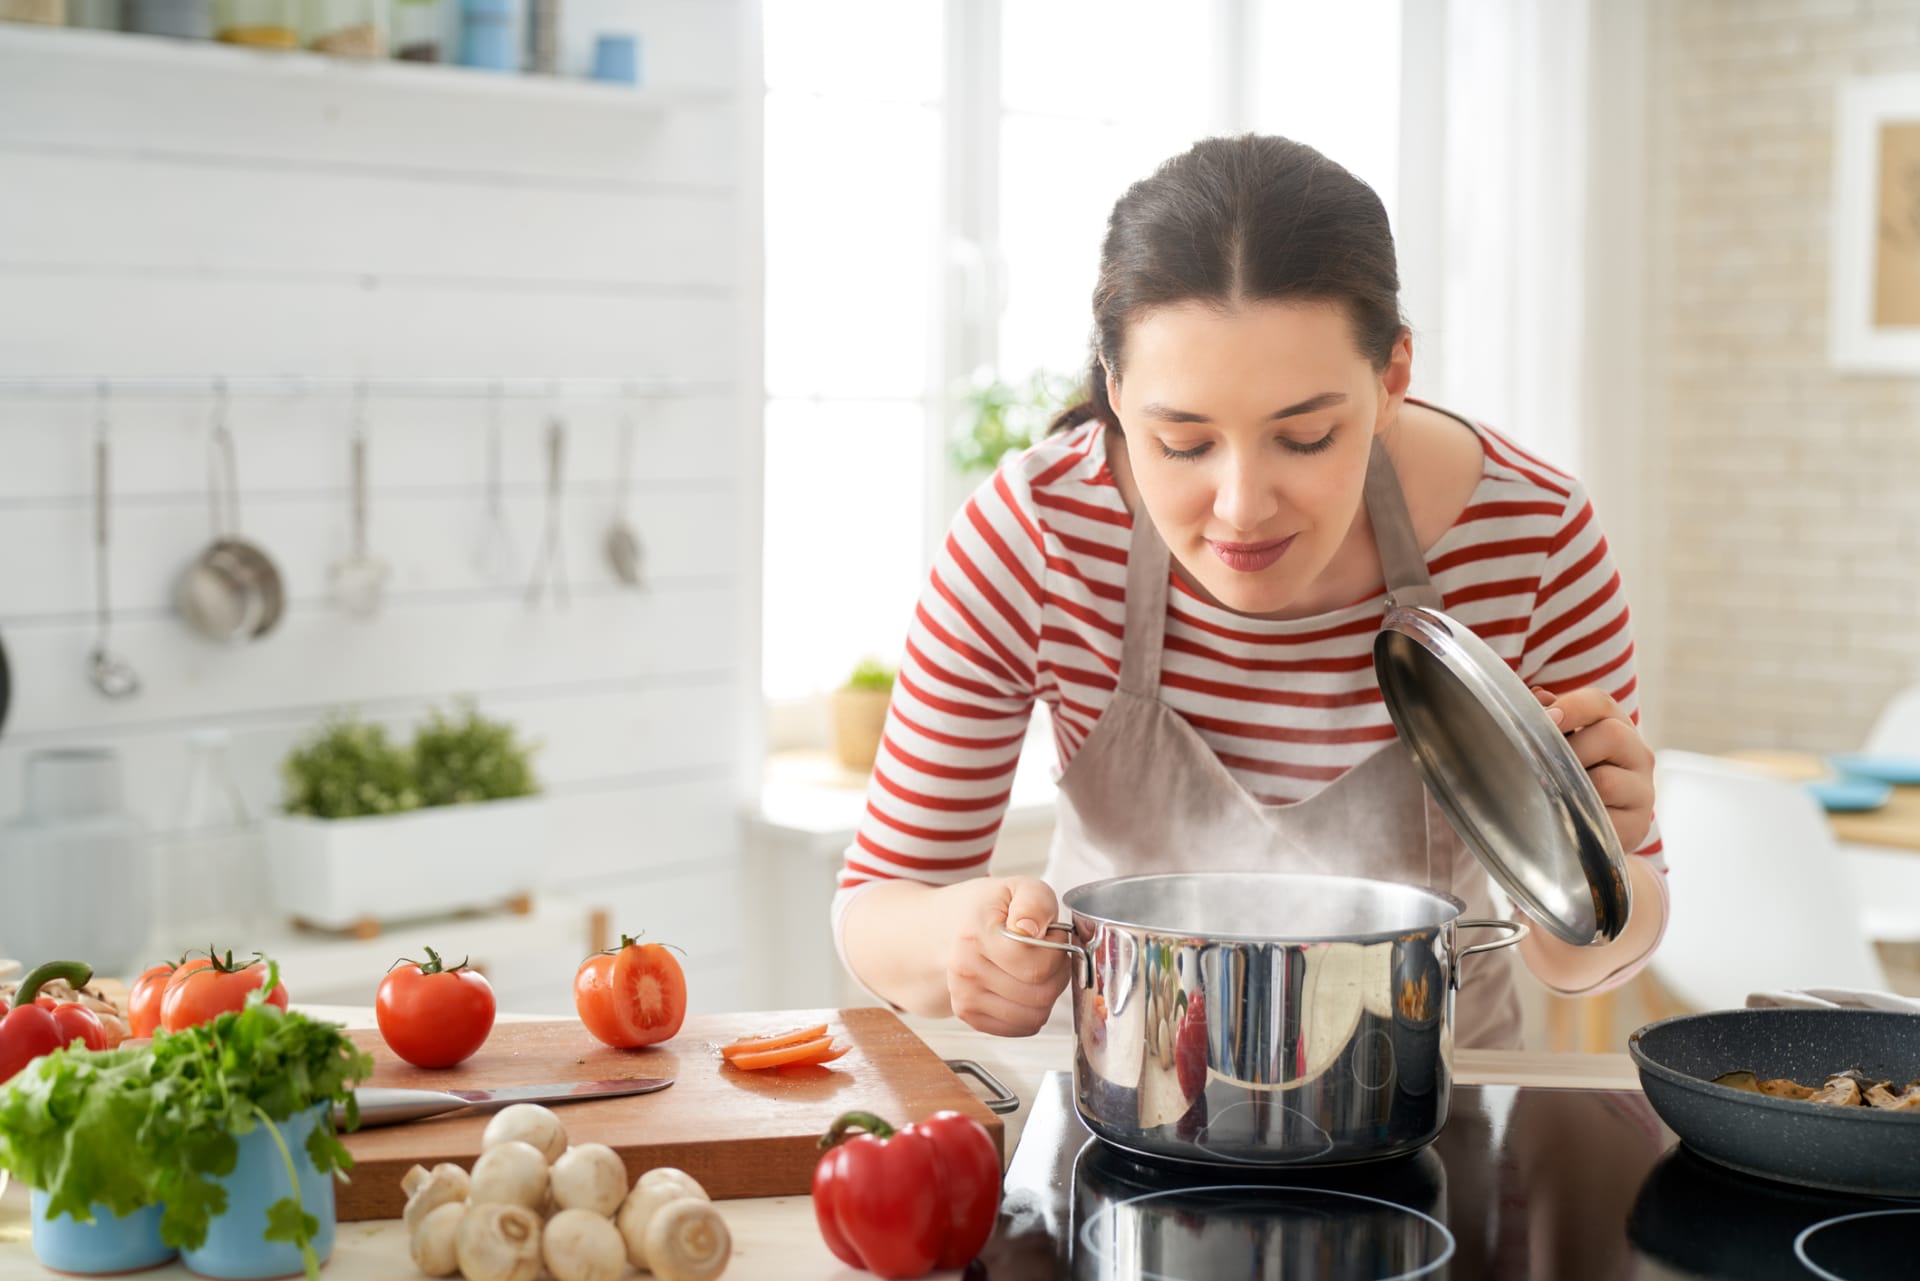 Osvojte si tajné triky profesionálních kuchařů